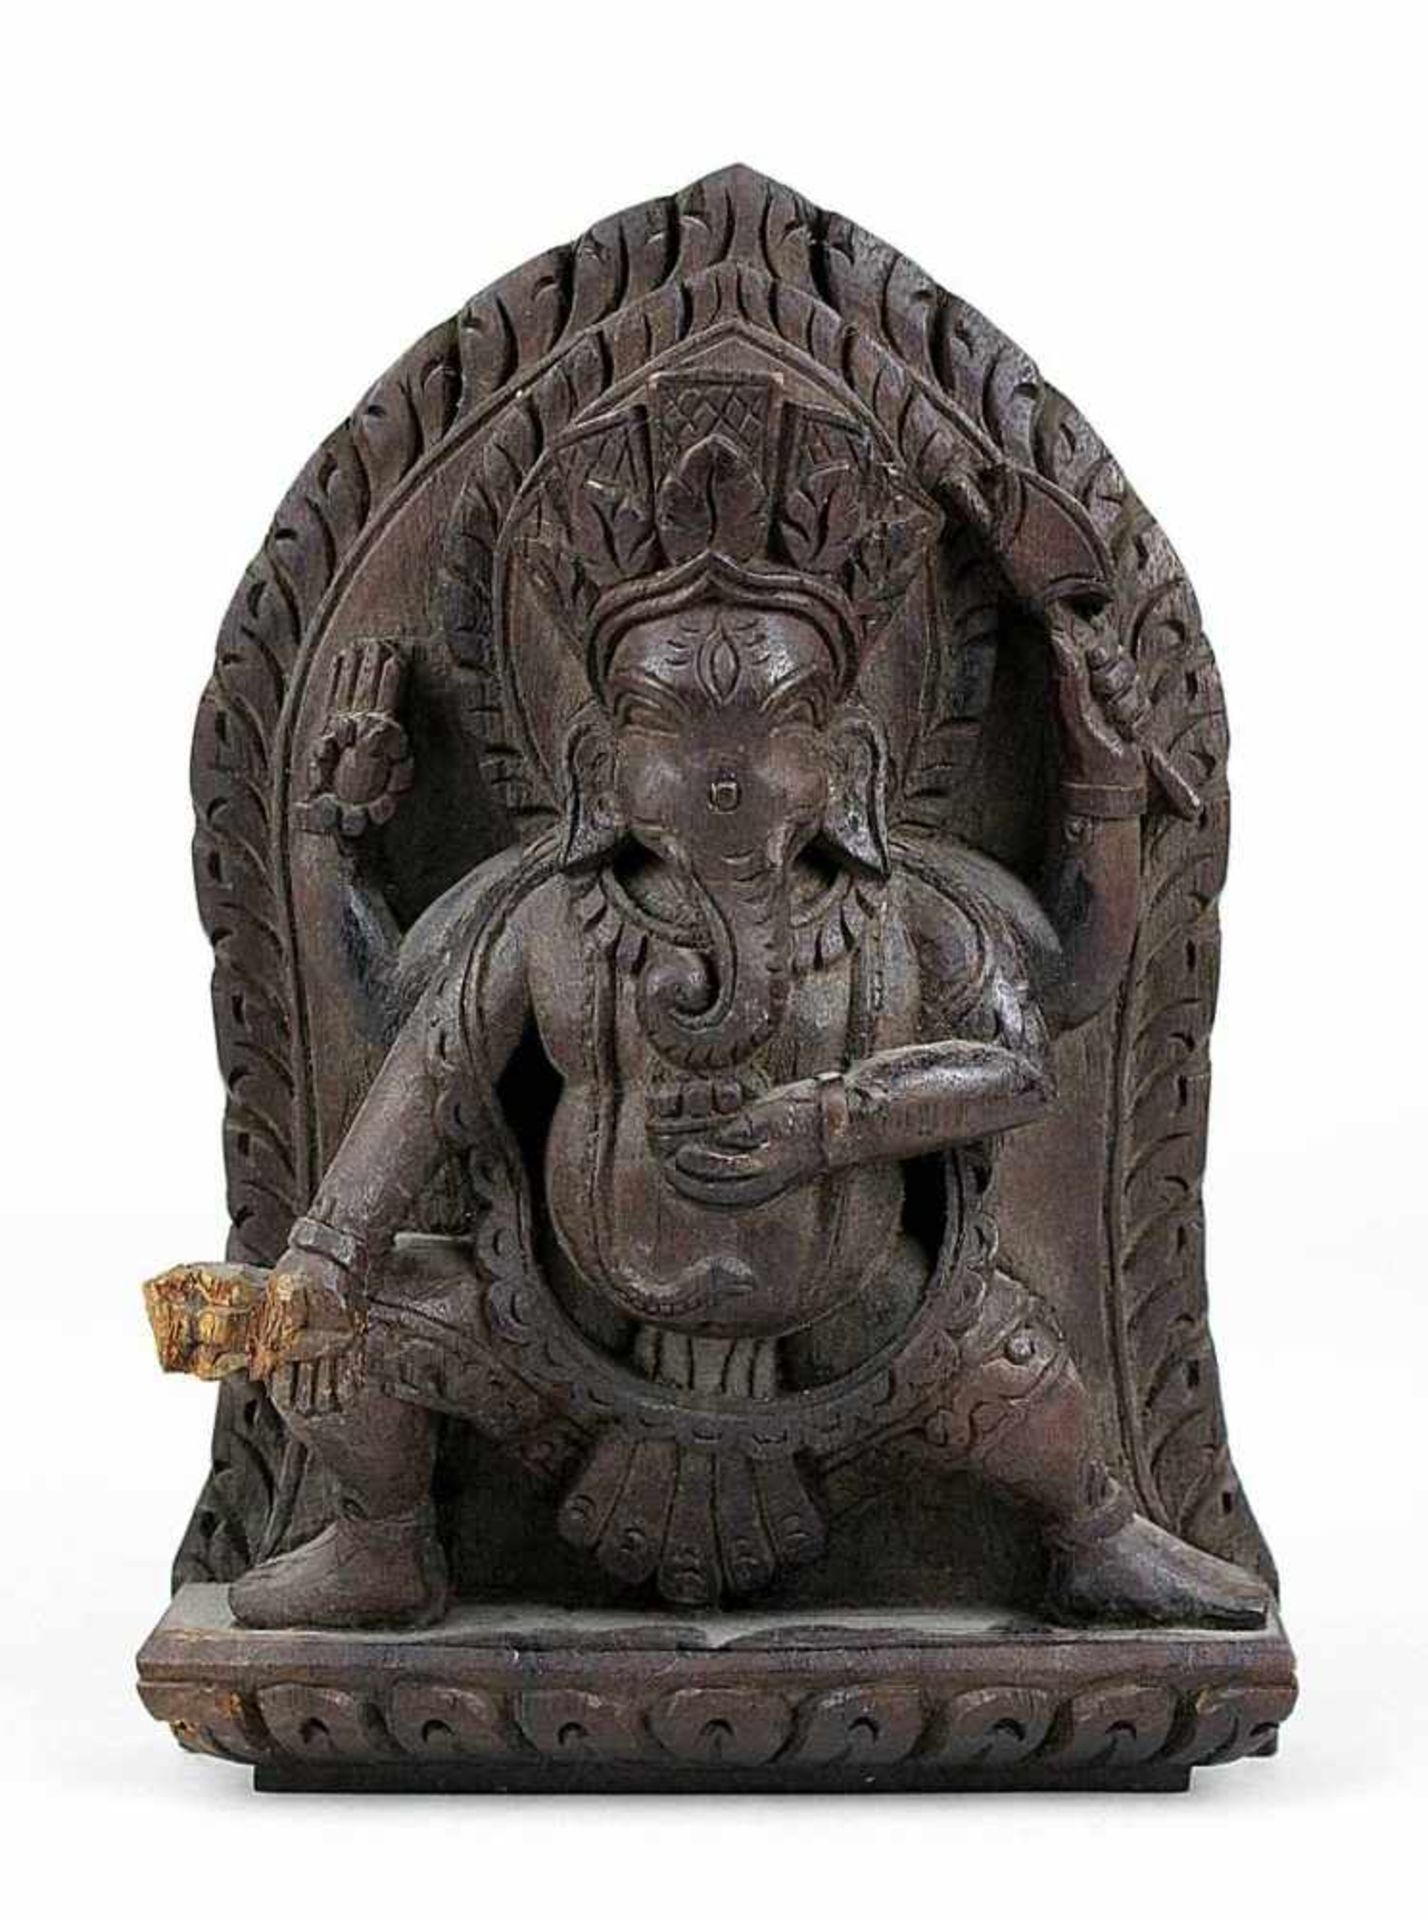 Kleines indisches Relief mit vierarmigem Ganesha, aus tropischem Hartholz geschnitzt, eine rechte